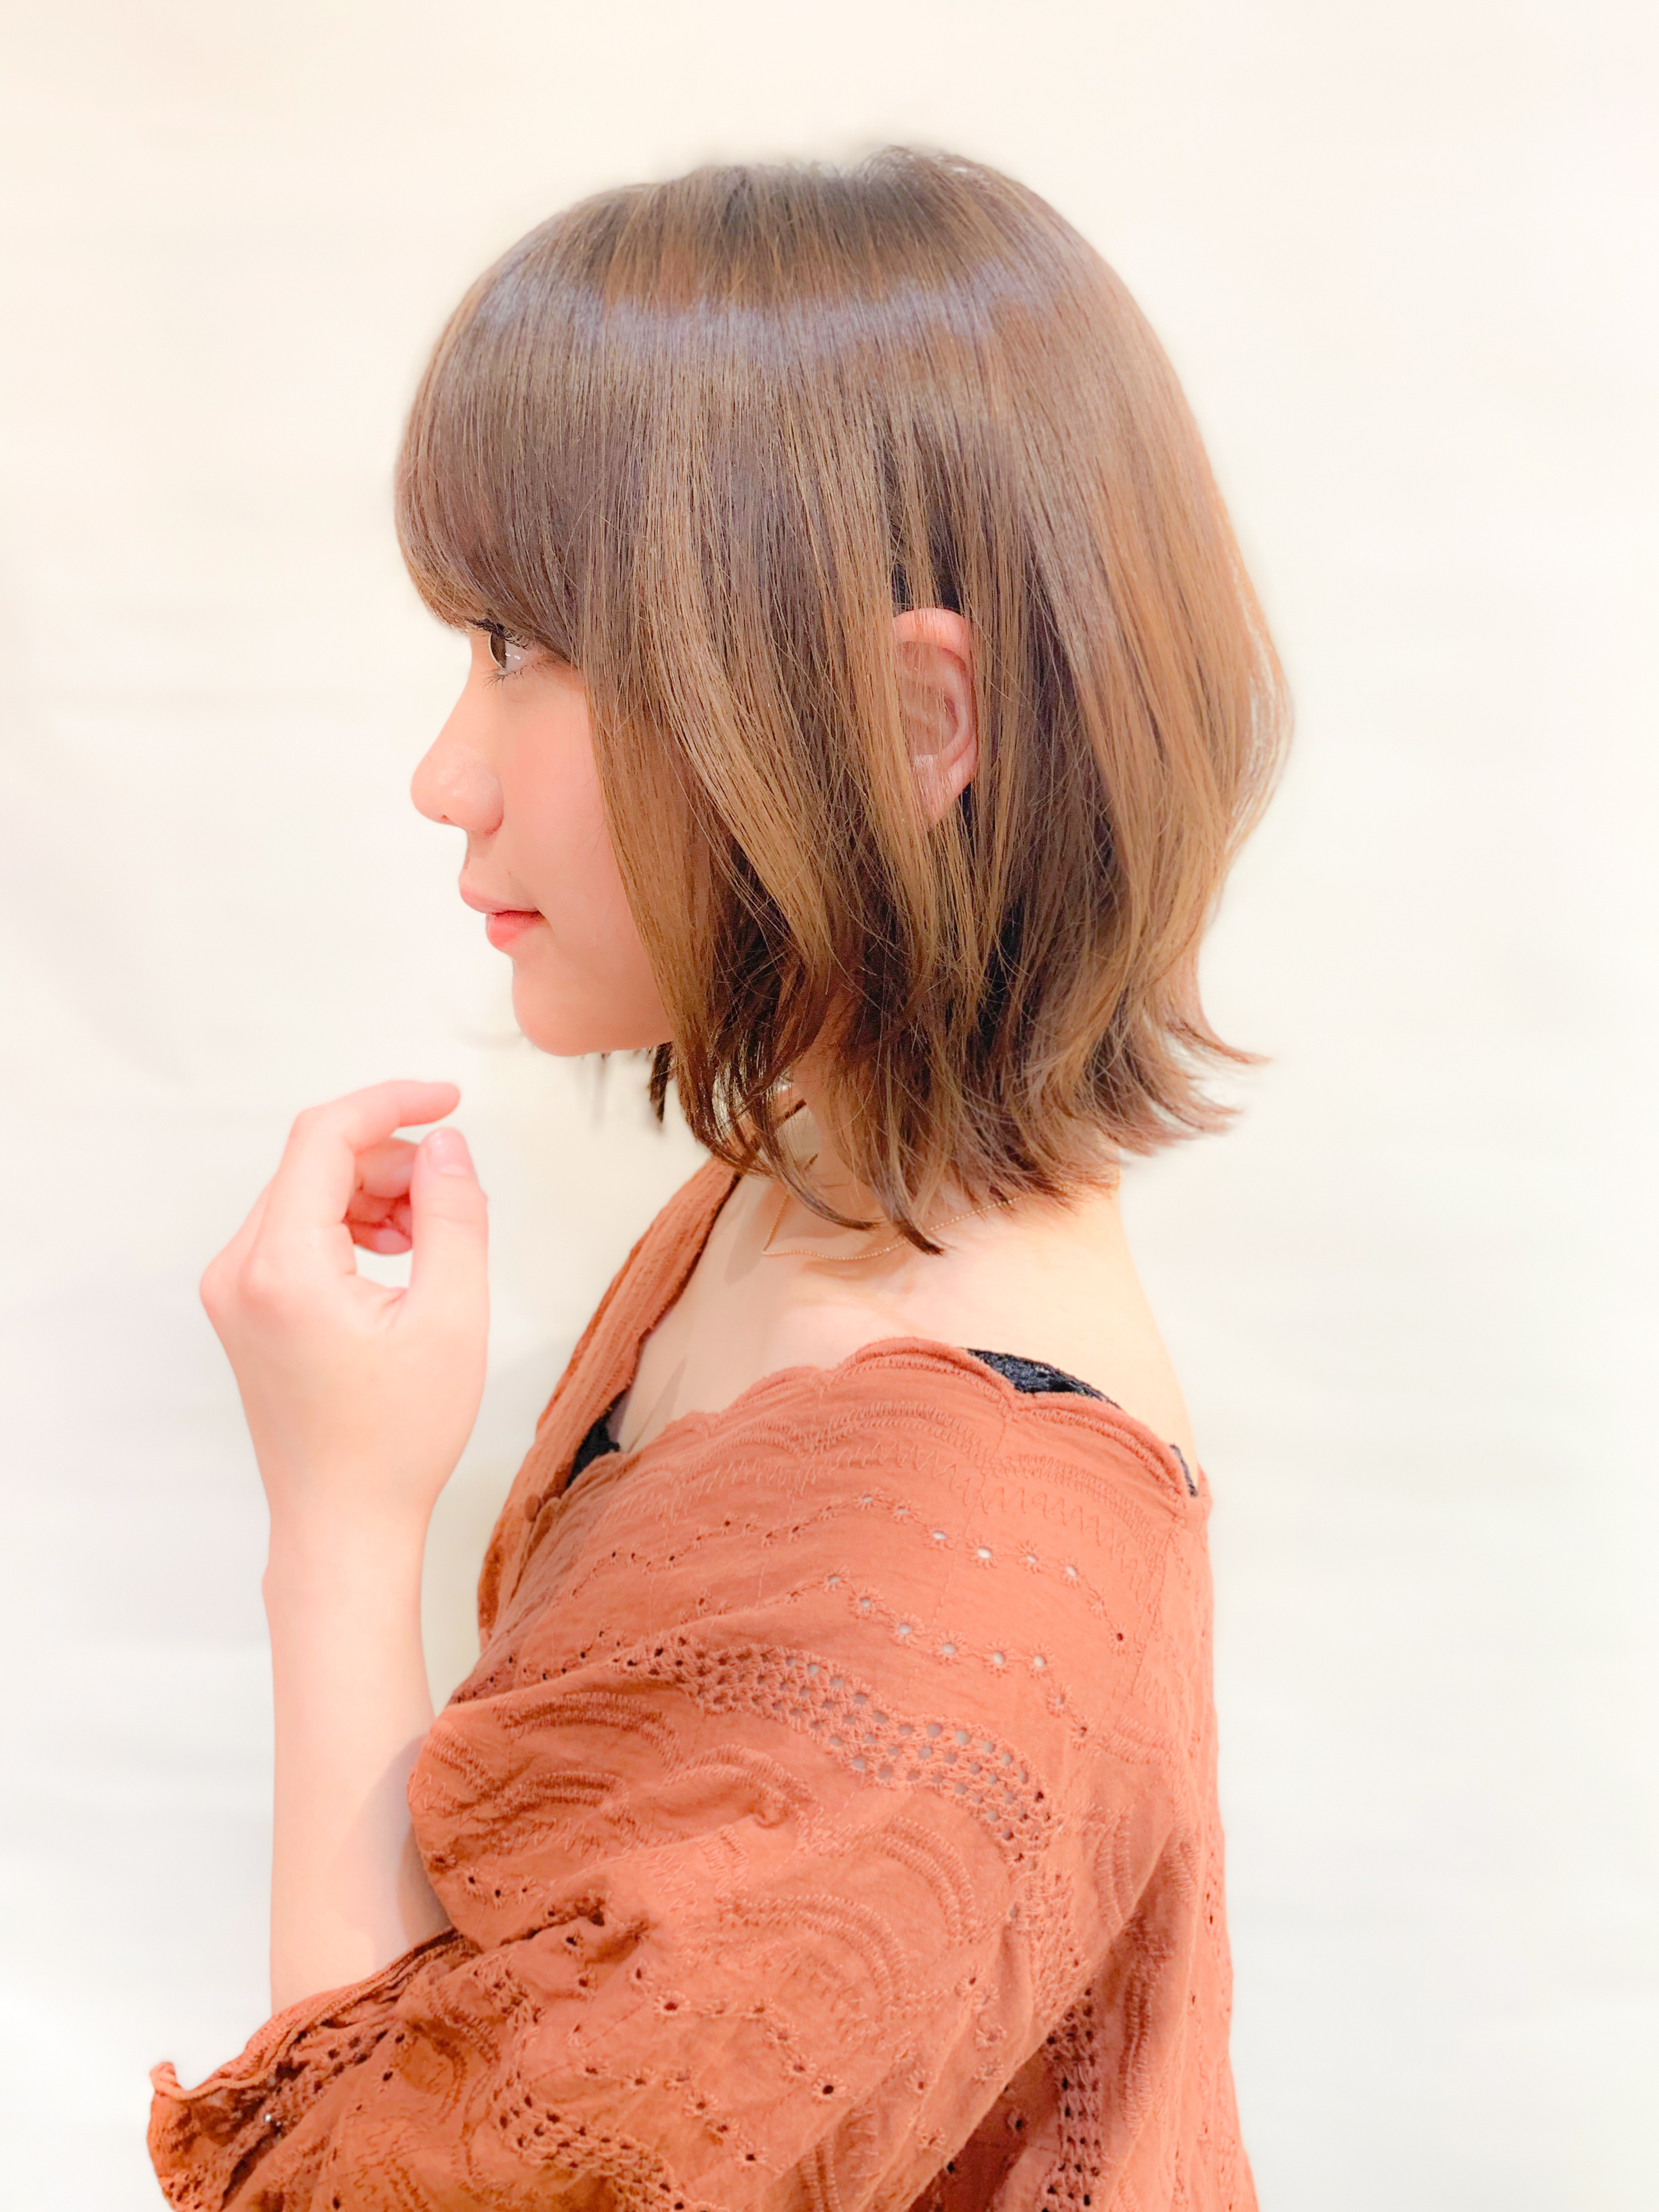 似合う髪型がわからない女性の為のコラム 似合わせカットが上手い東京の美容師 美容室minx銀座 蛭田のブログ